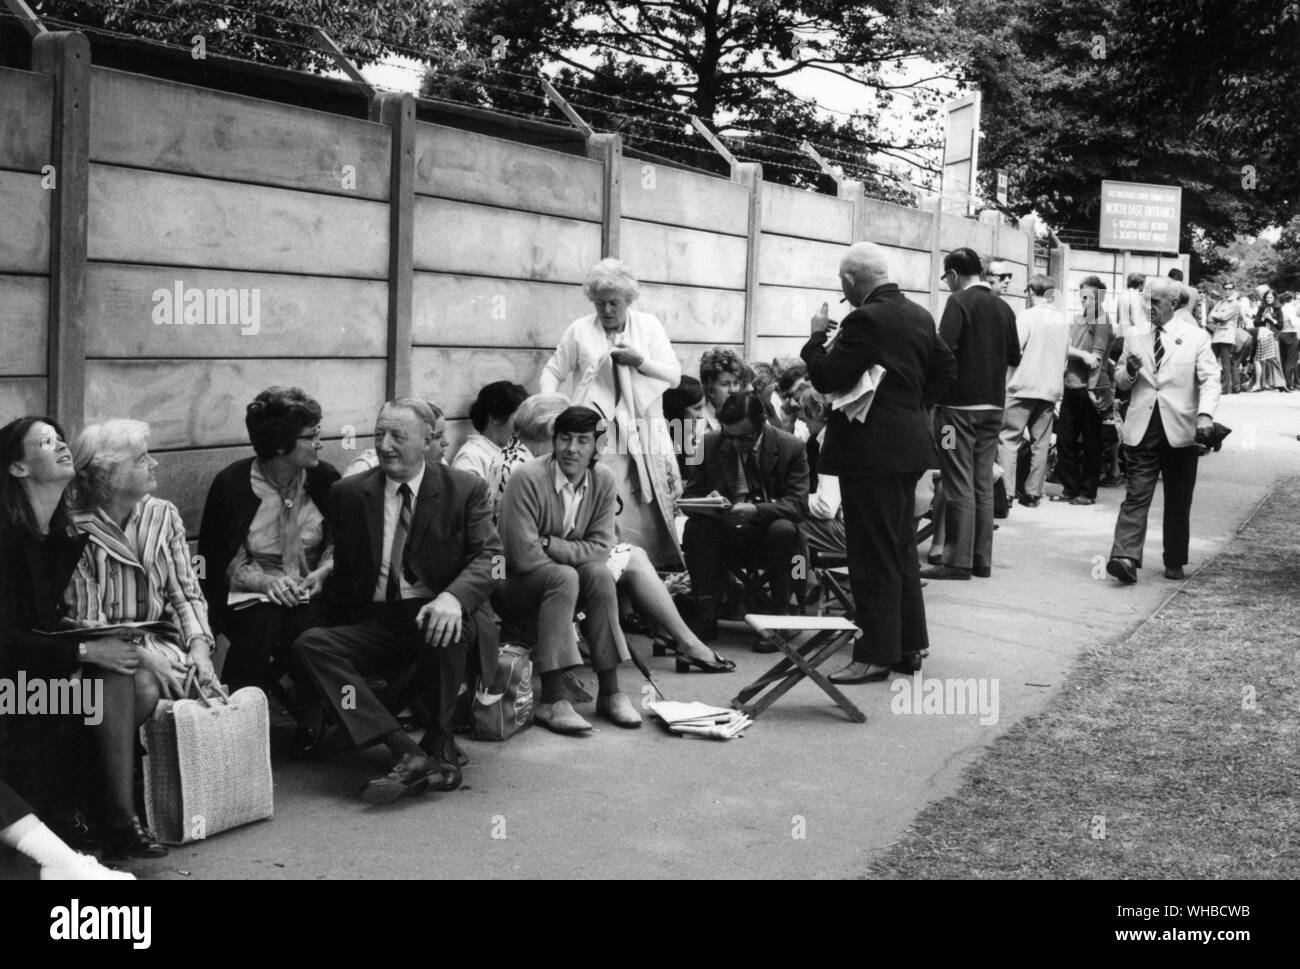 Wimbledon 1971 - crowd waiting. Stock Photo